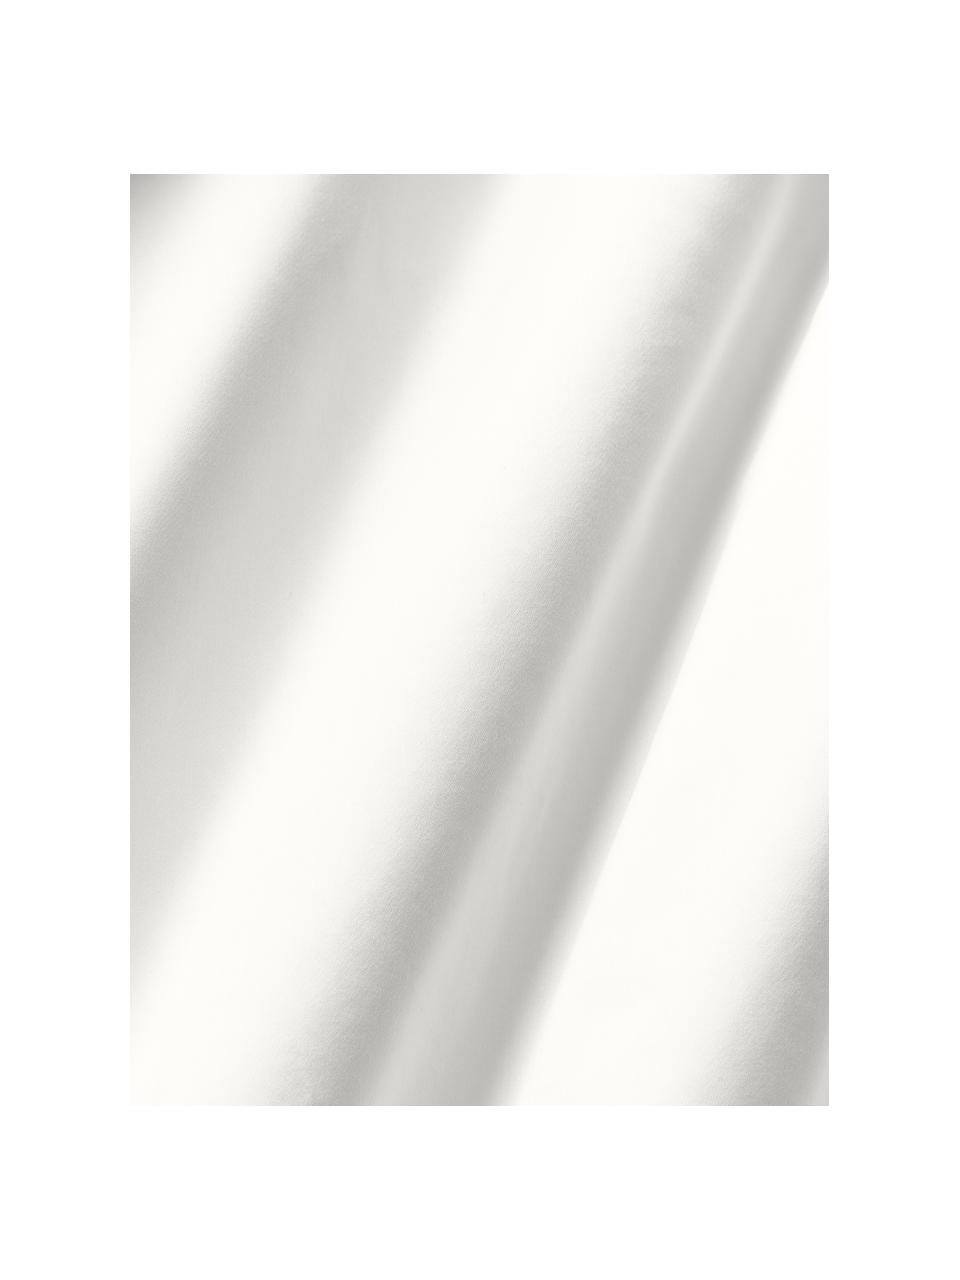 Sábana bajera de satén Premium, Gris claro, Cama 90 cm (90 x 200 x 35 cm)